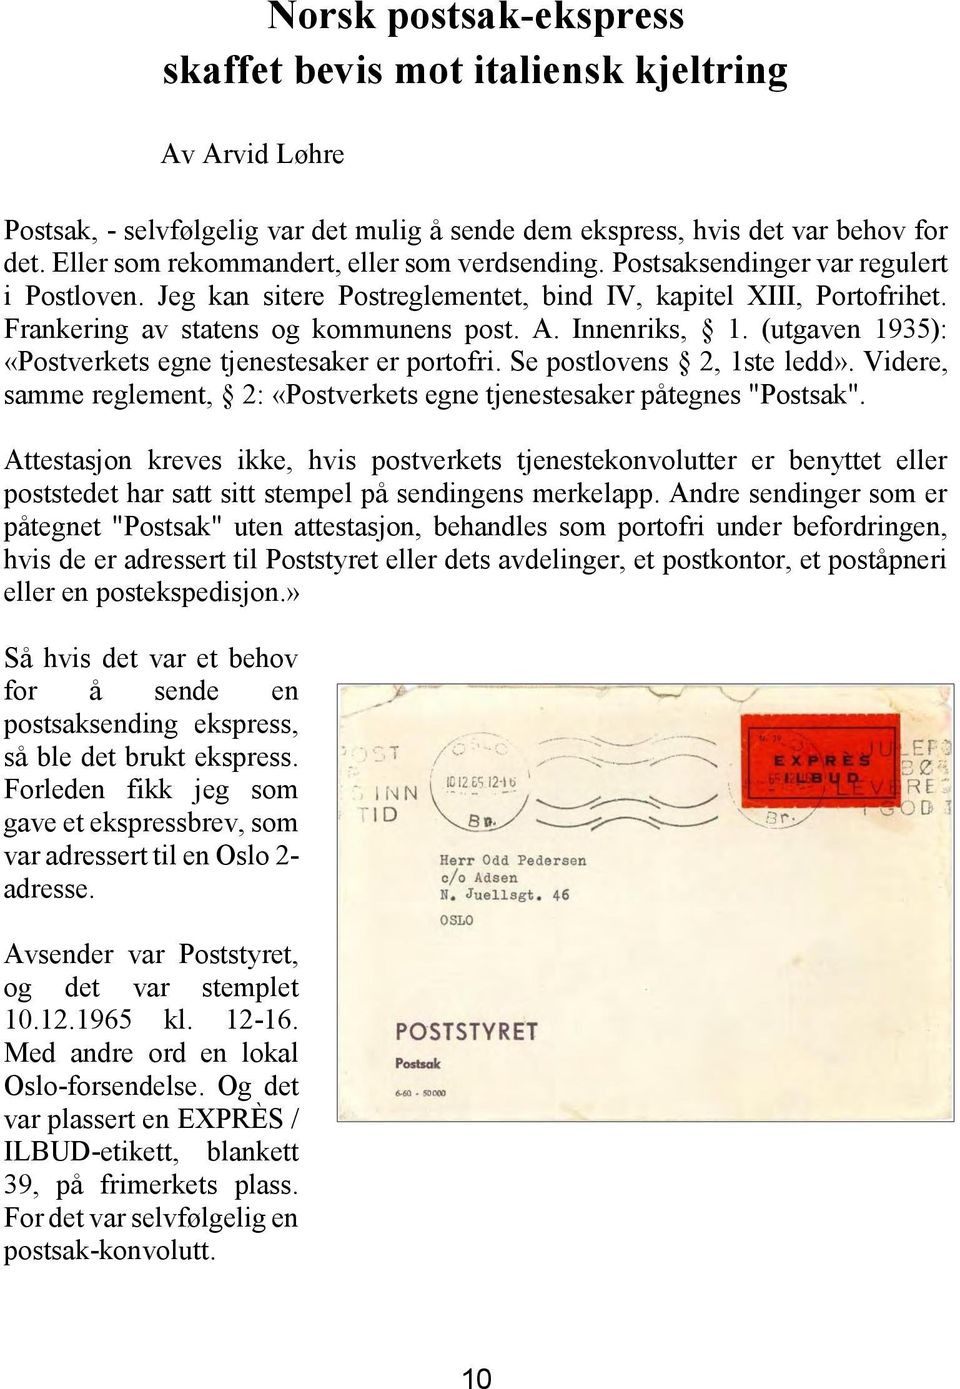 A. Innenriks, 1. (utgaven 1935): «Postverkets egne tjenestesaker er portofri. Se postlovens 2, 1ste ledd». Videre, samme reglement, 2: «Postverkets egne tjenestesaker påtegnes "Postsak".